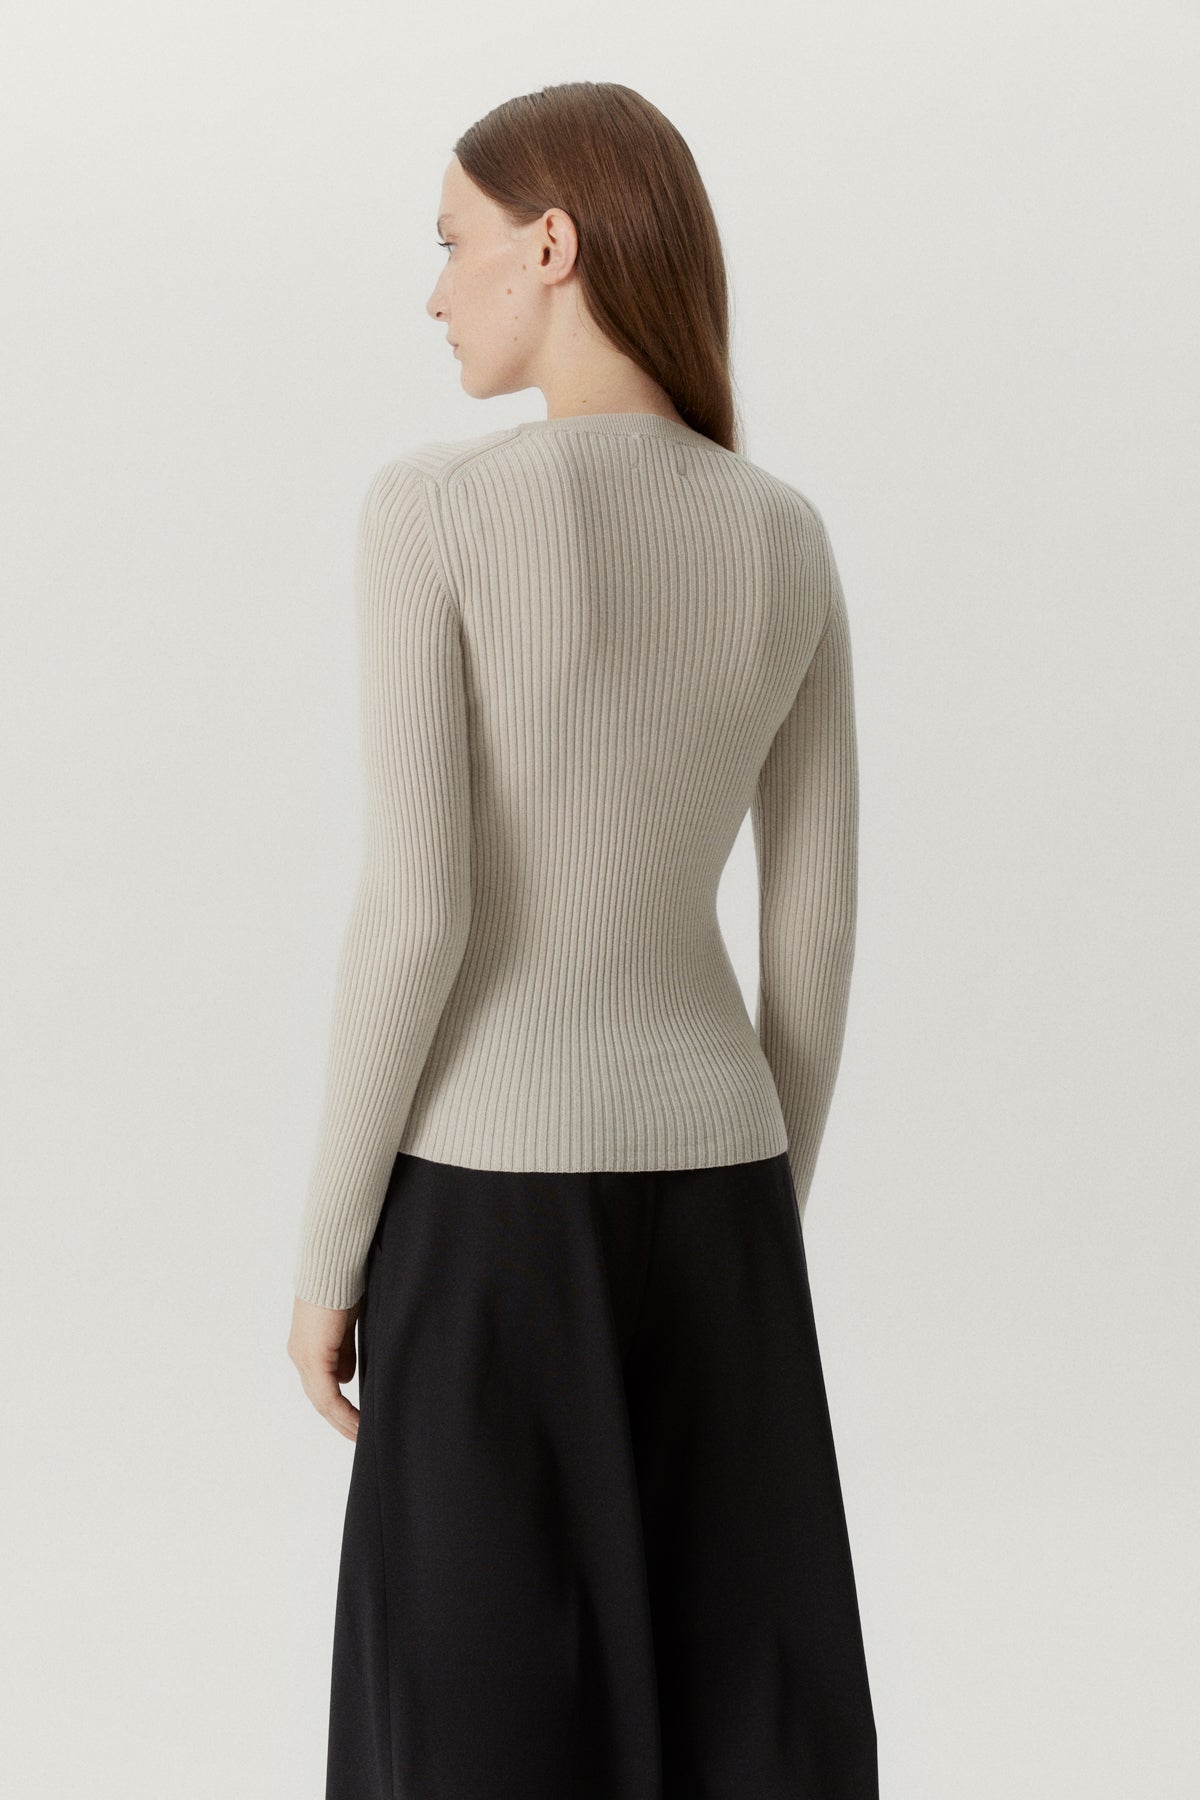 Pearl | The Merino Wool U-Neck Sweater